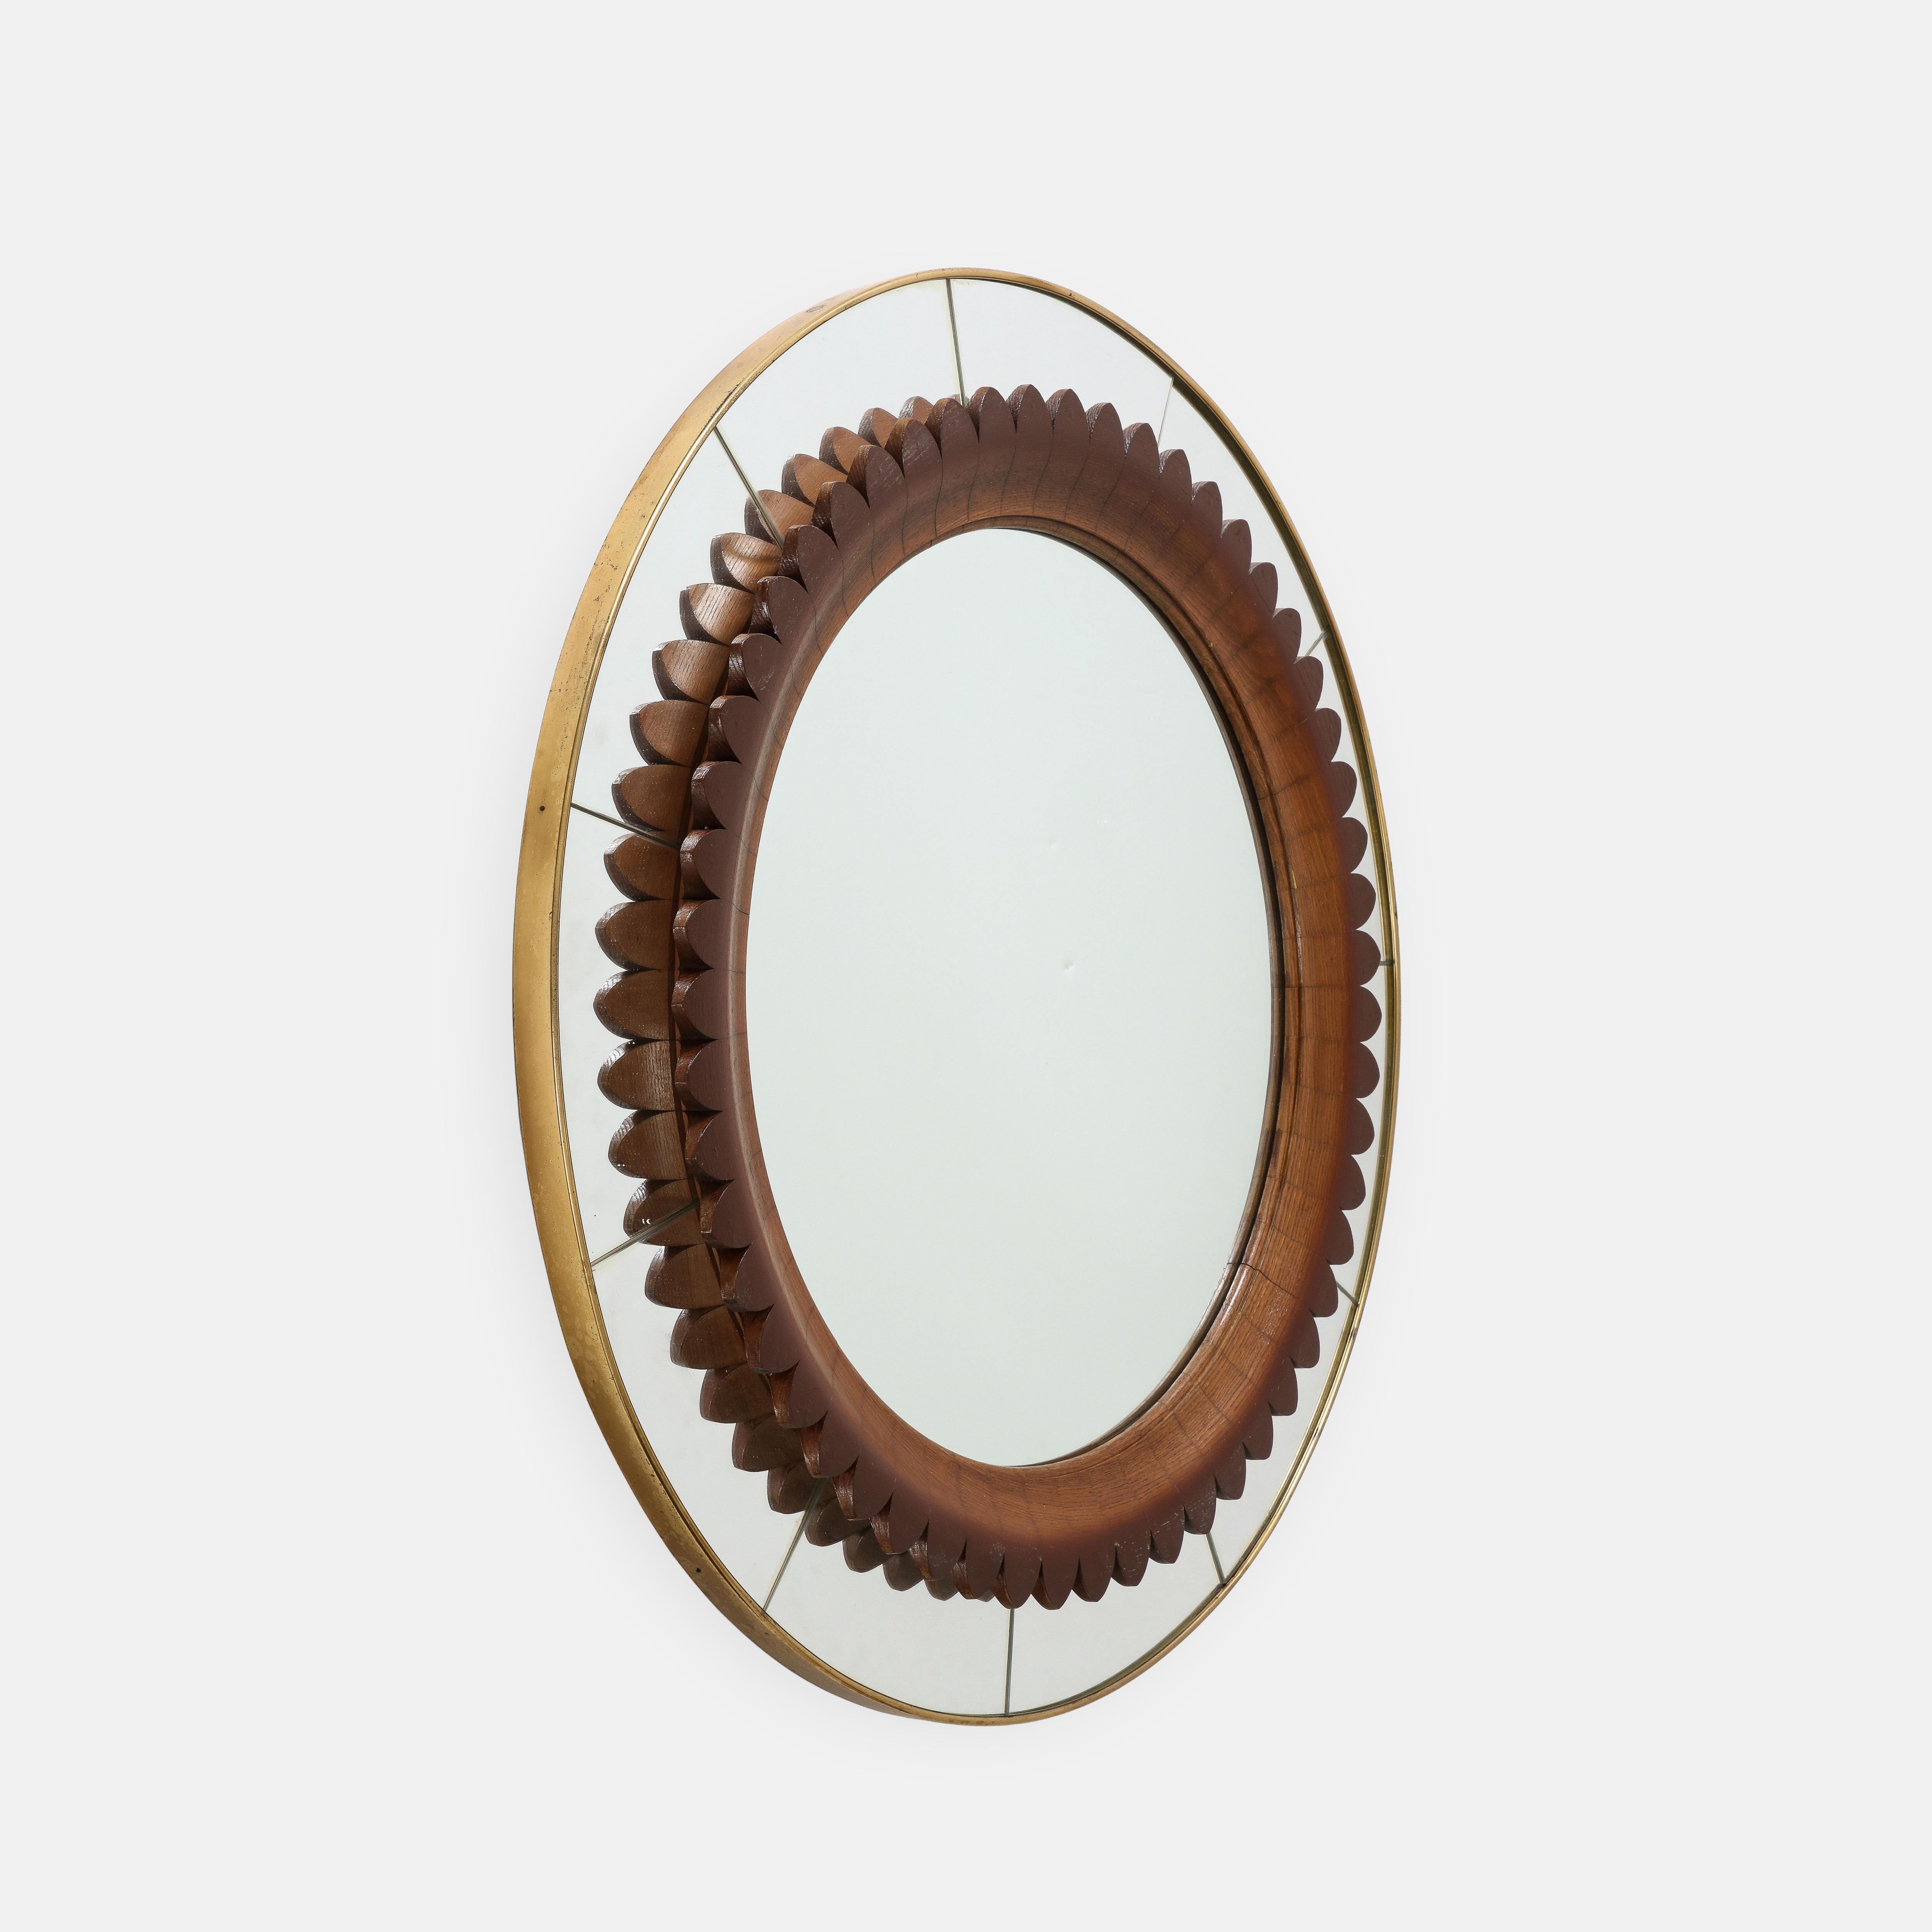 Rare miroir mural rond Fratelli pour Framar, avec détails en noyer, verre miroir d'origine et cadre en laiton, Italie, années 1950.  Ce miroir sculptural exquis présente de merveilleux détails, notamment la décoration circulaire intérieure en noyer